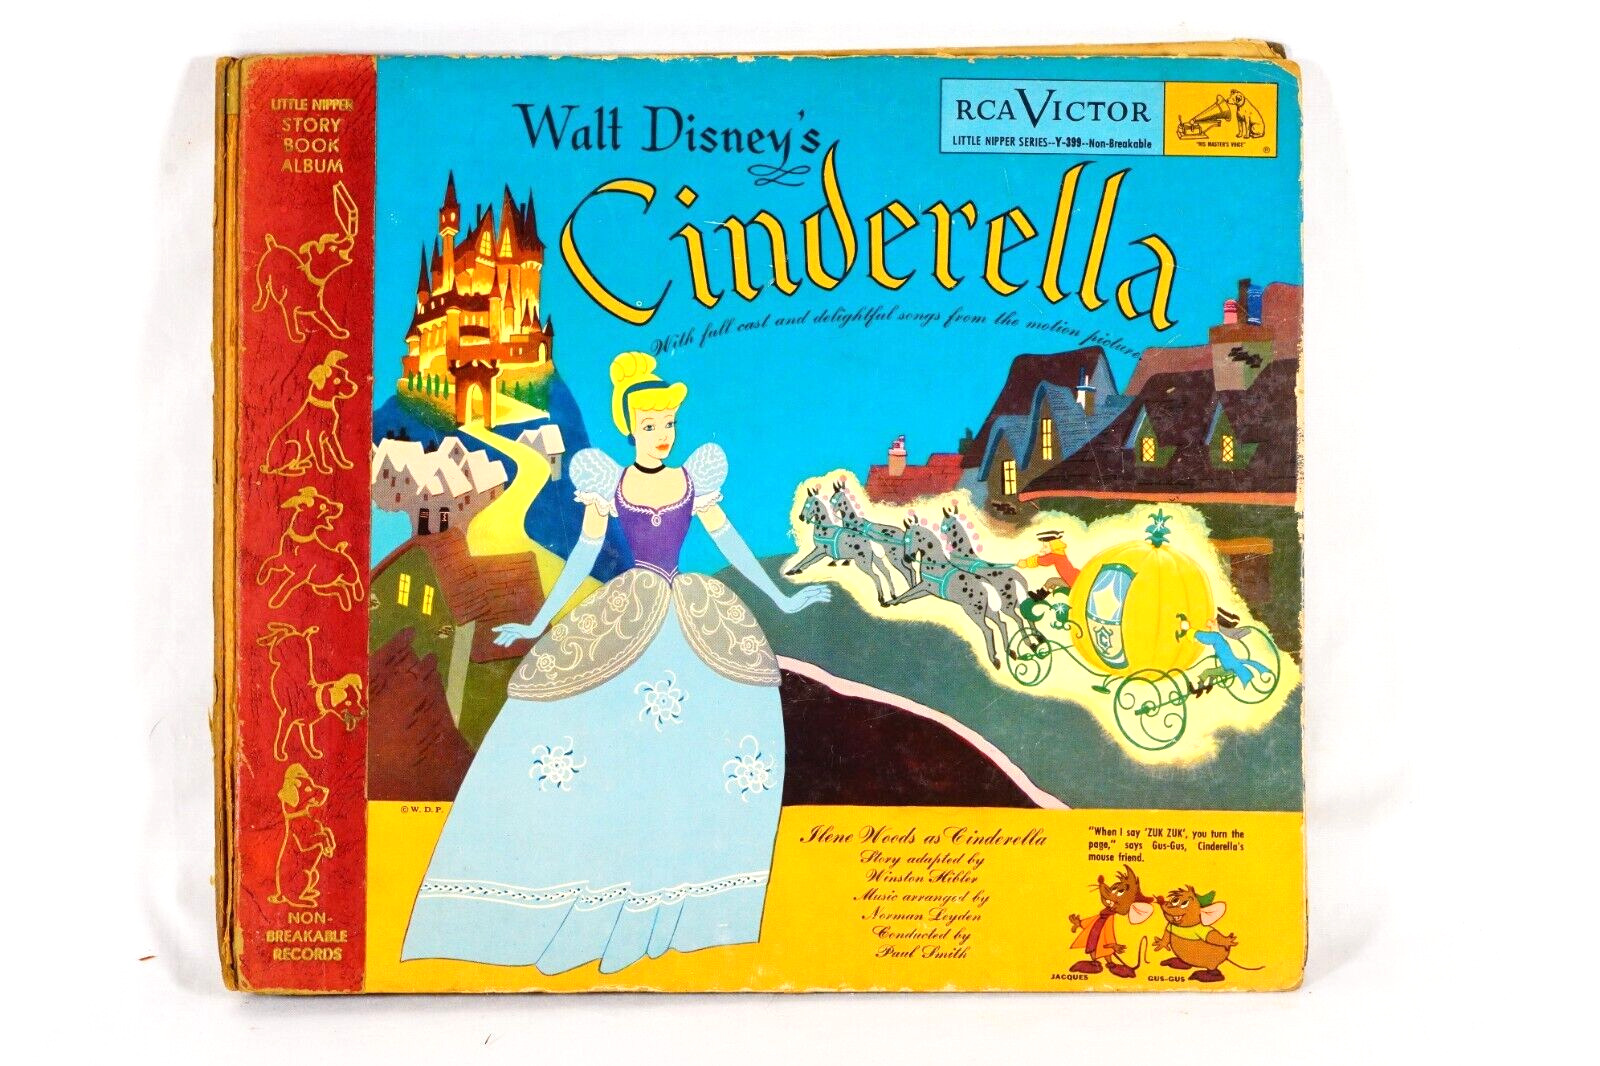 1949 Walt Disneys CINDERELLA Storybook Album Y-399 RCA Victor 78RPM 1st Release